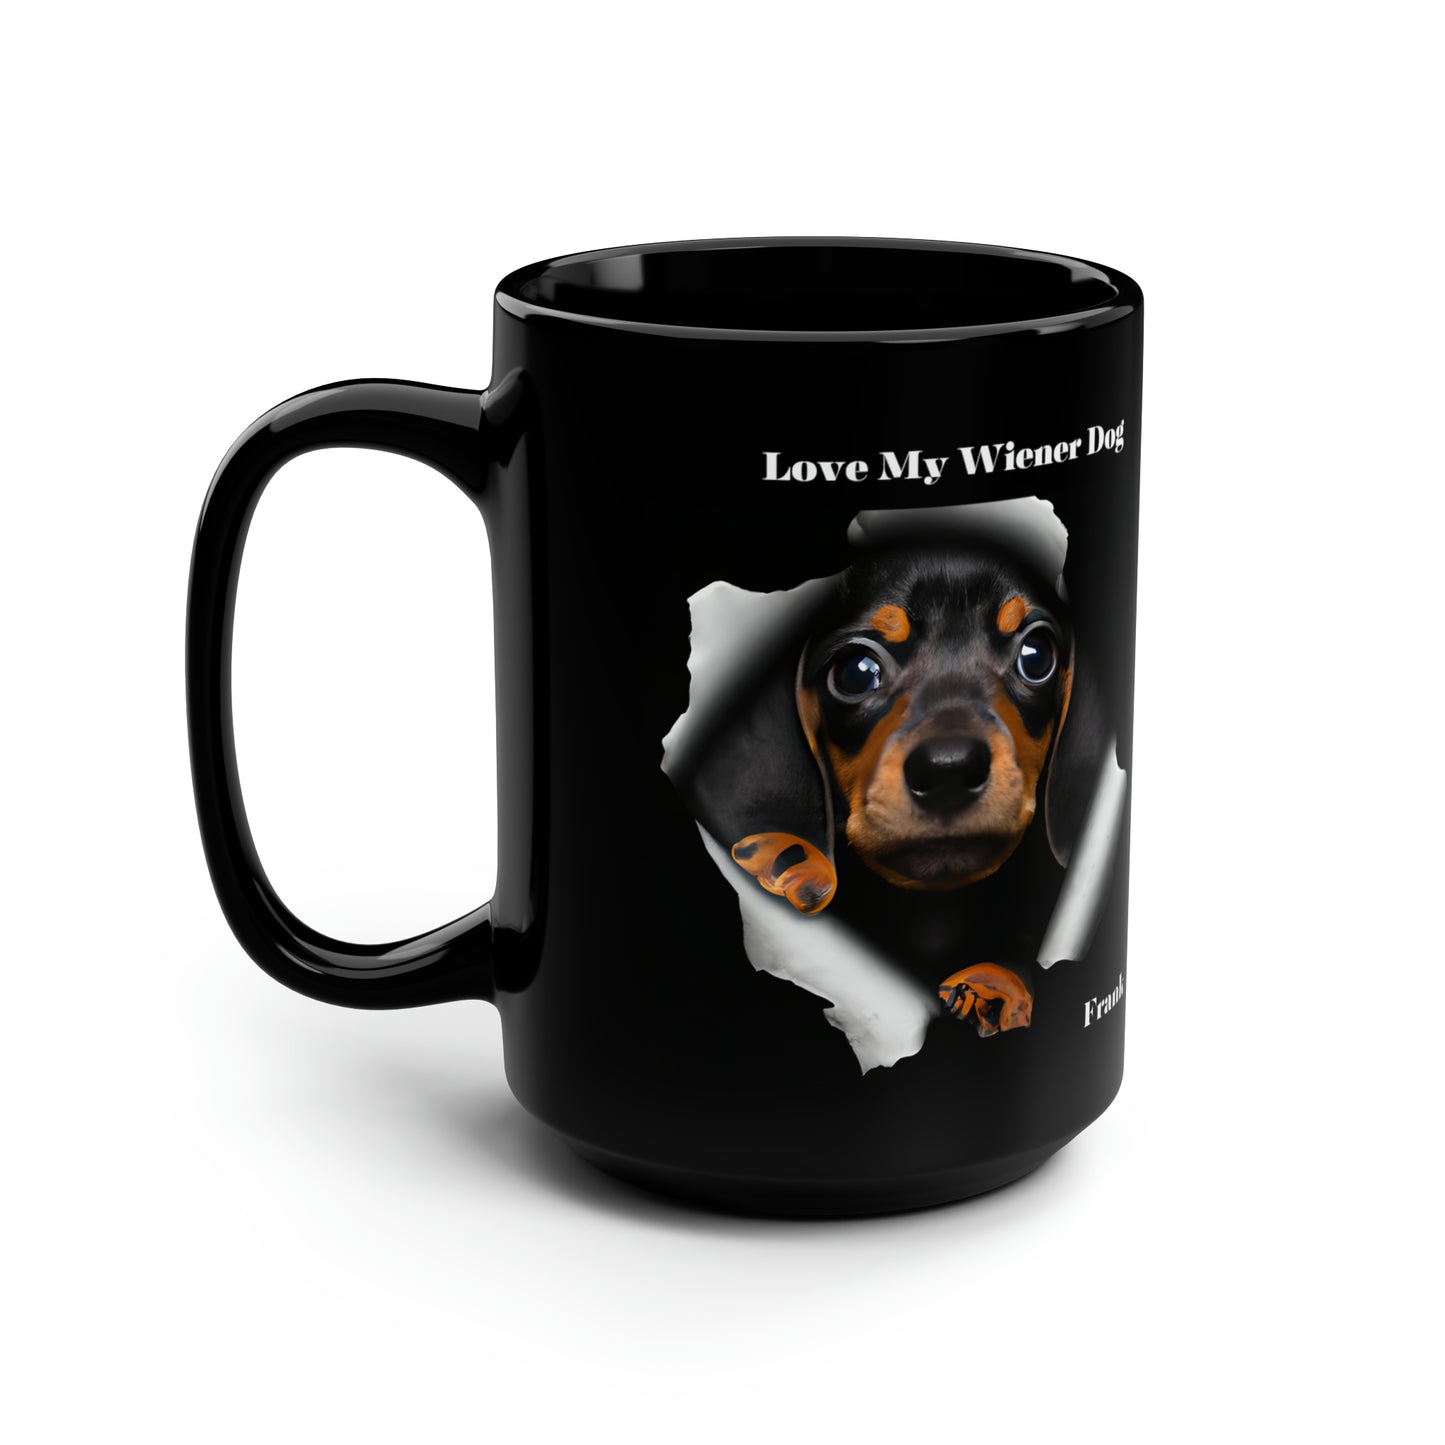 Wiener Dog Black Mug 15oz Dachshund Dog Coffee Mug Custom Pet Gift For Coffee Fans